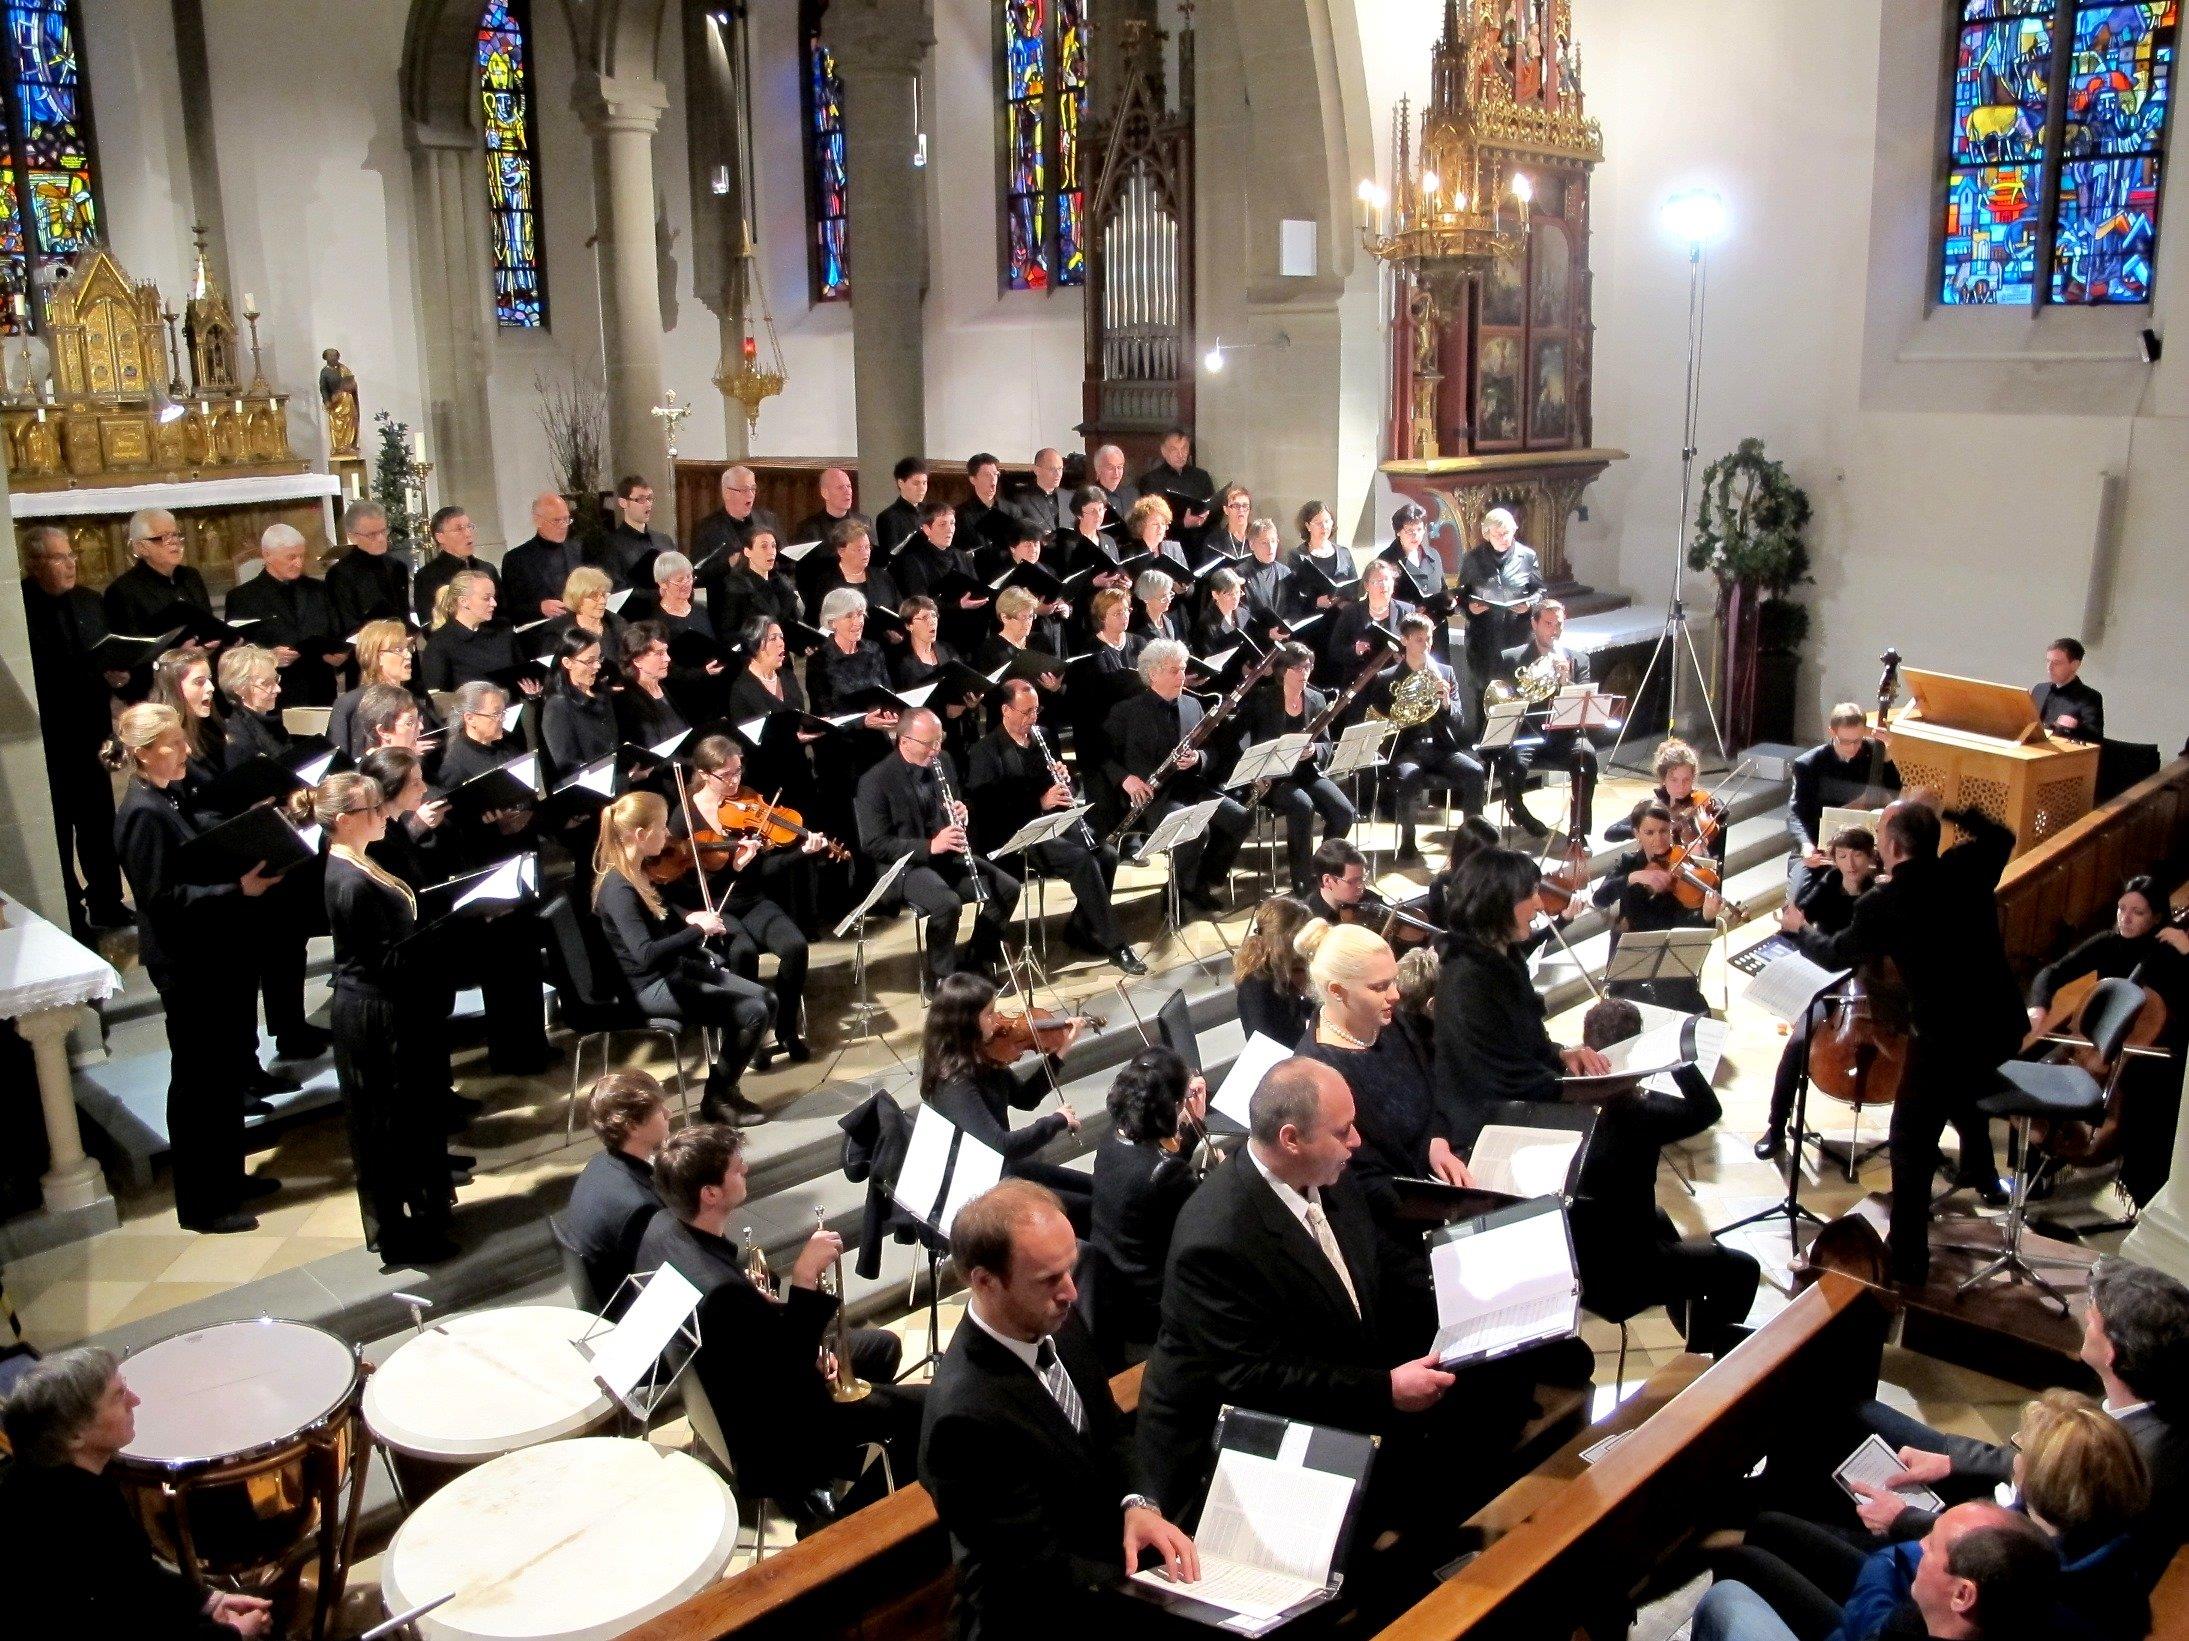 Jugendliche Mozartklänge ertönen Sonntagabend, 6.11., um 18:00 Uhr im Dom St. Nikolaus, Feldkirch.